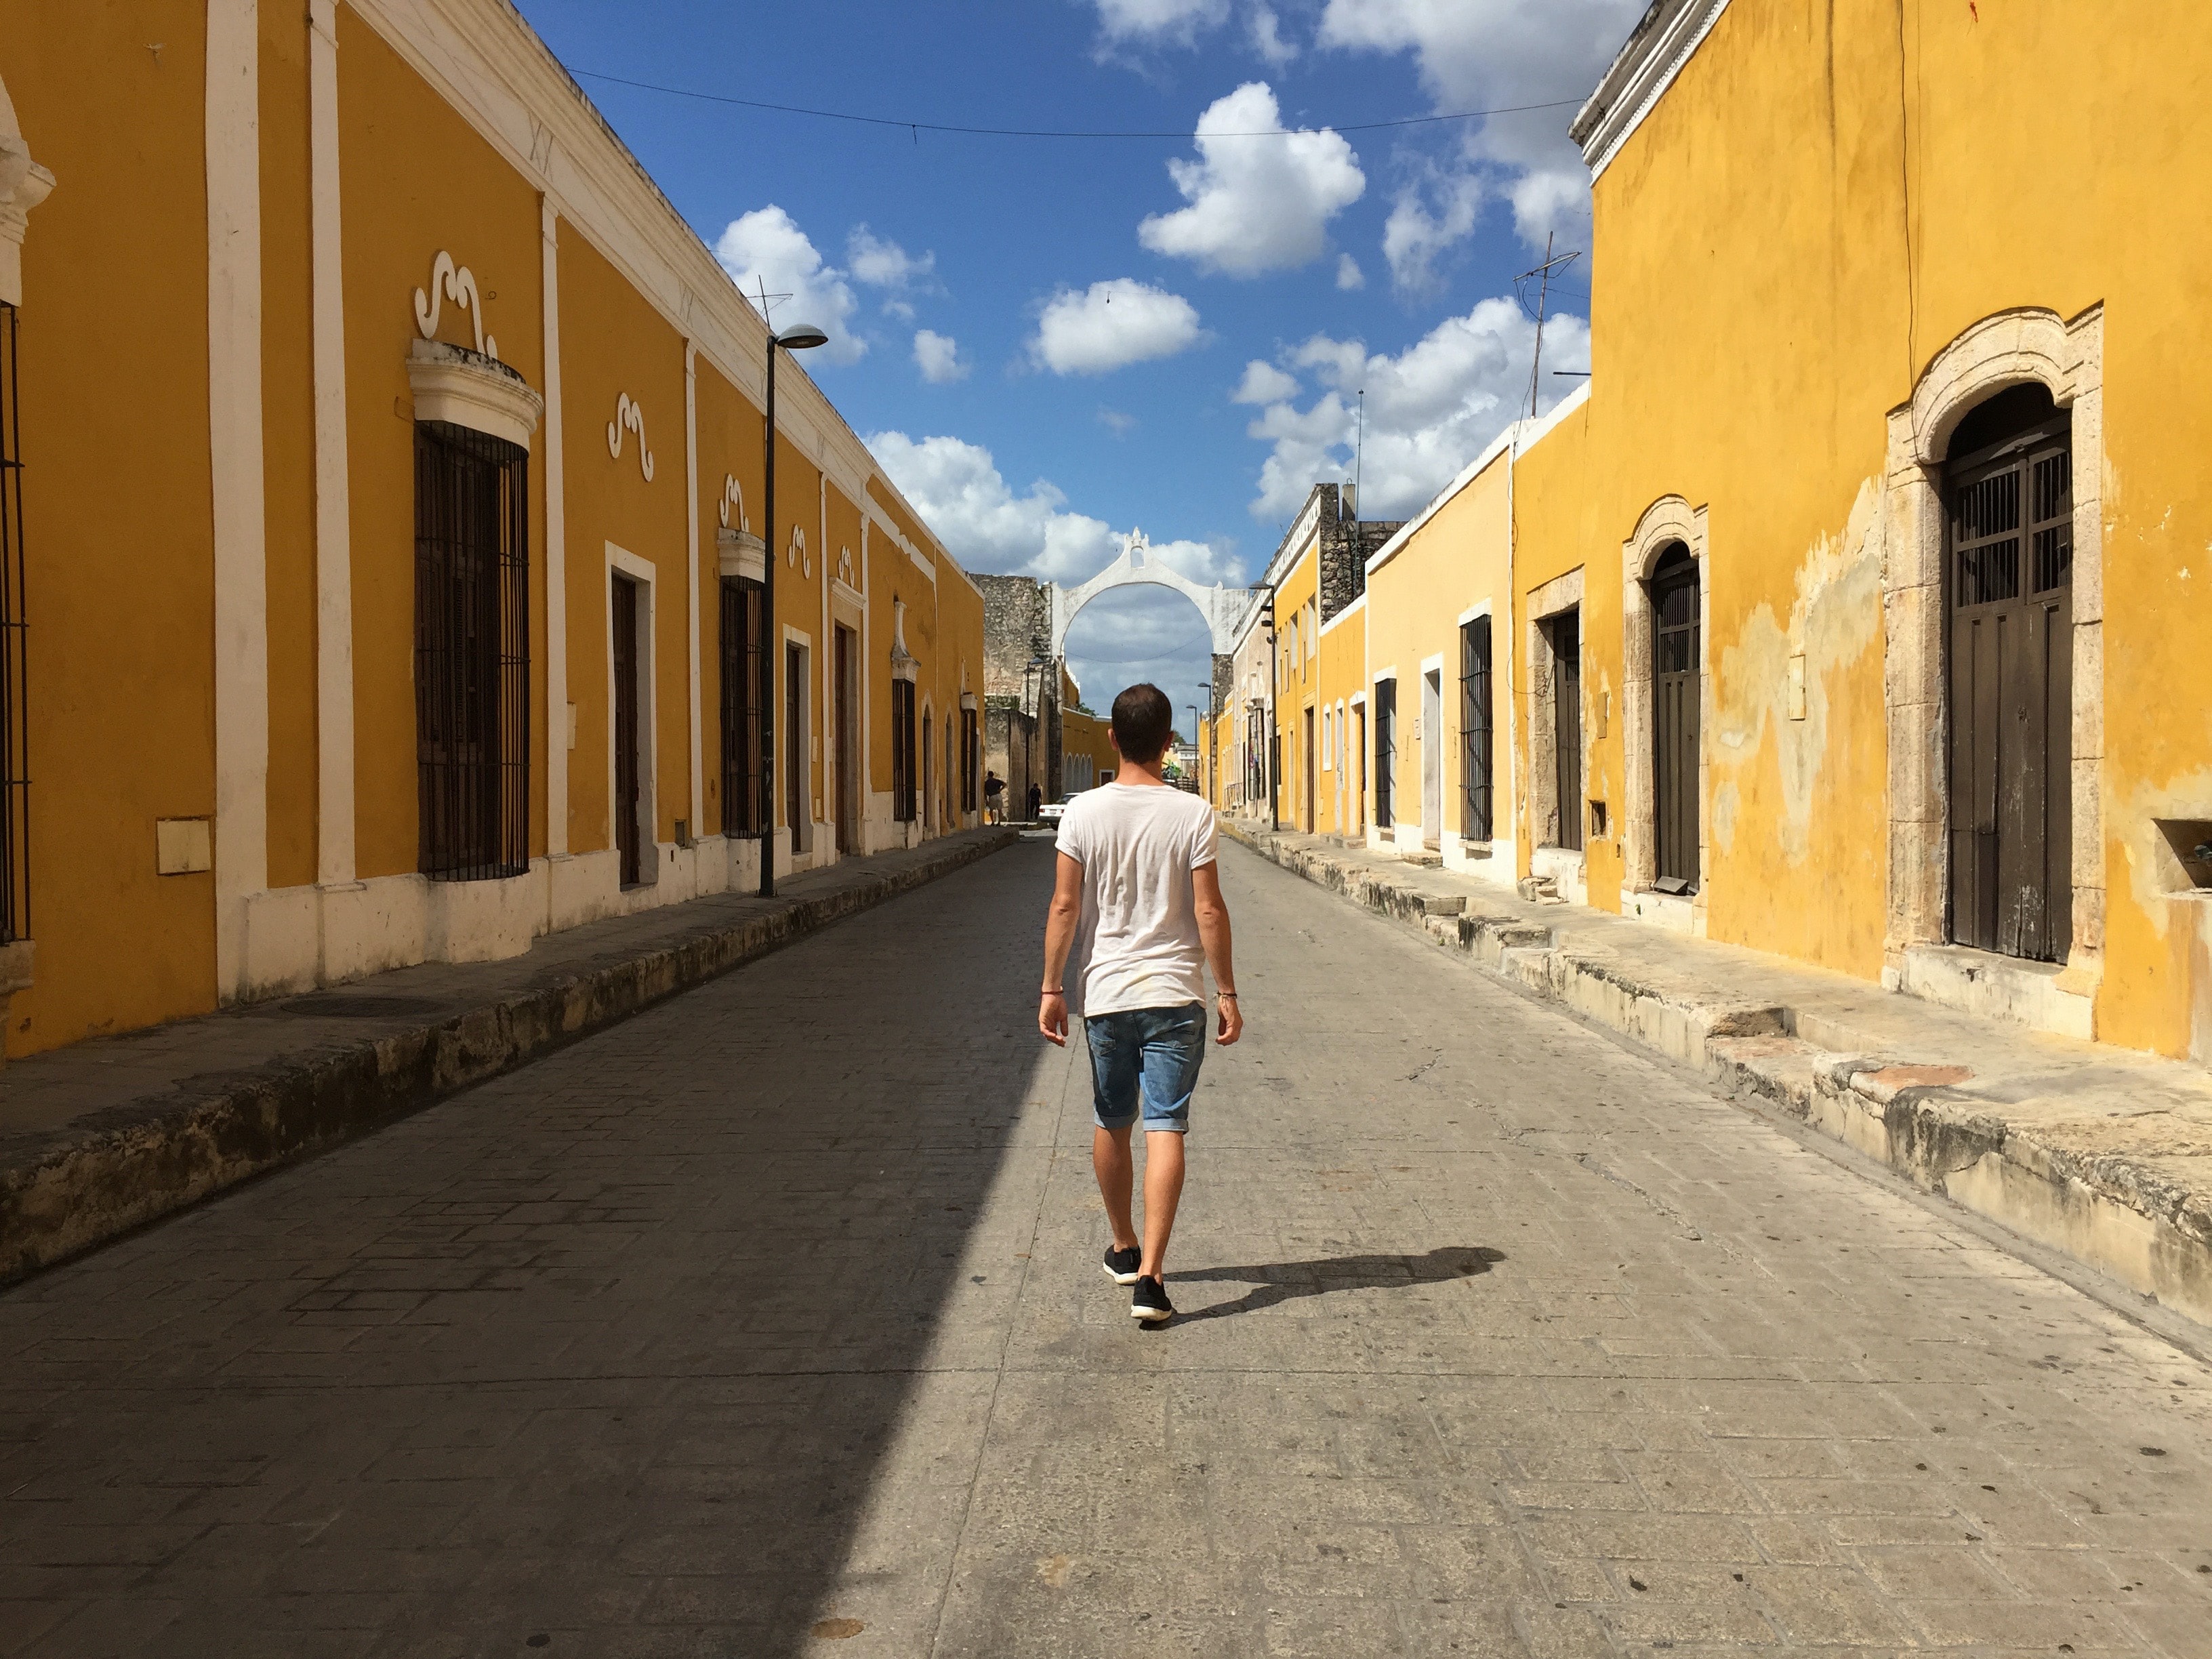 Day 03: Mexico – Merida